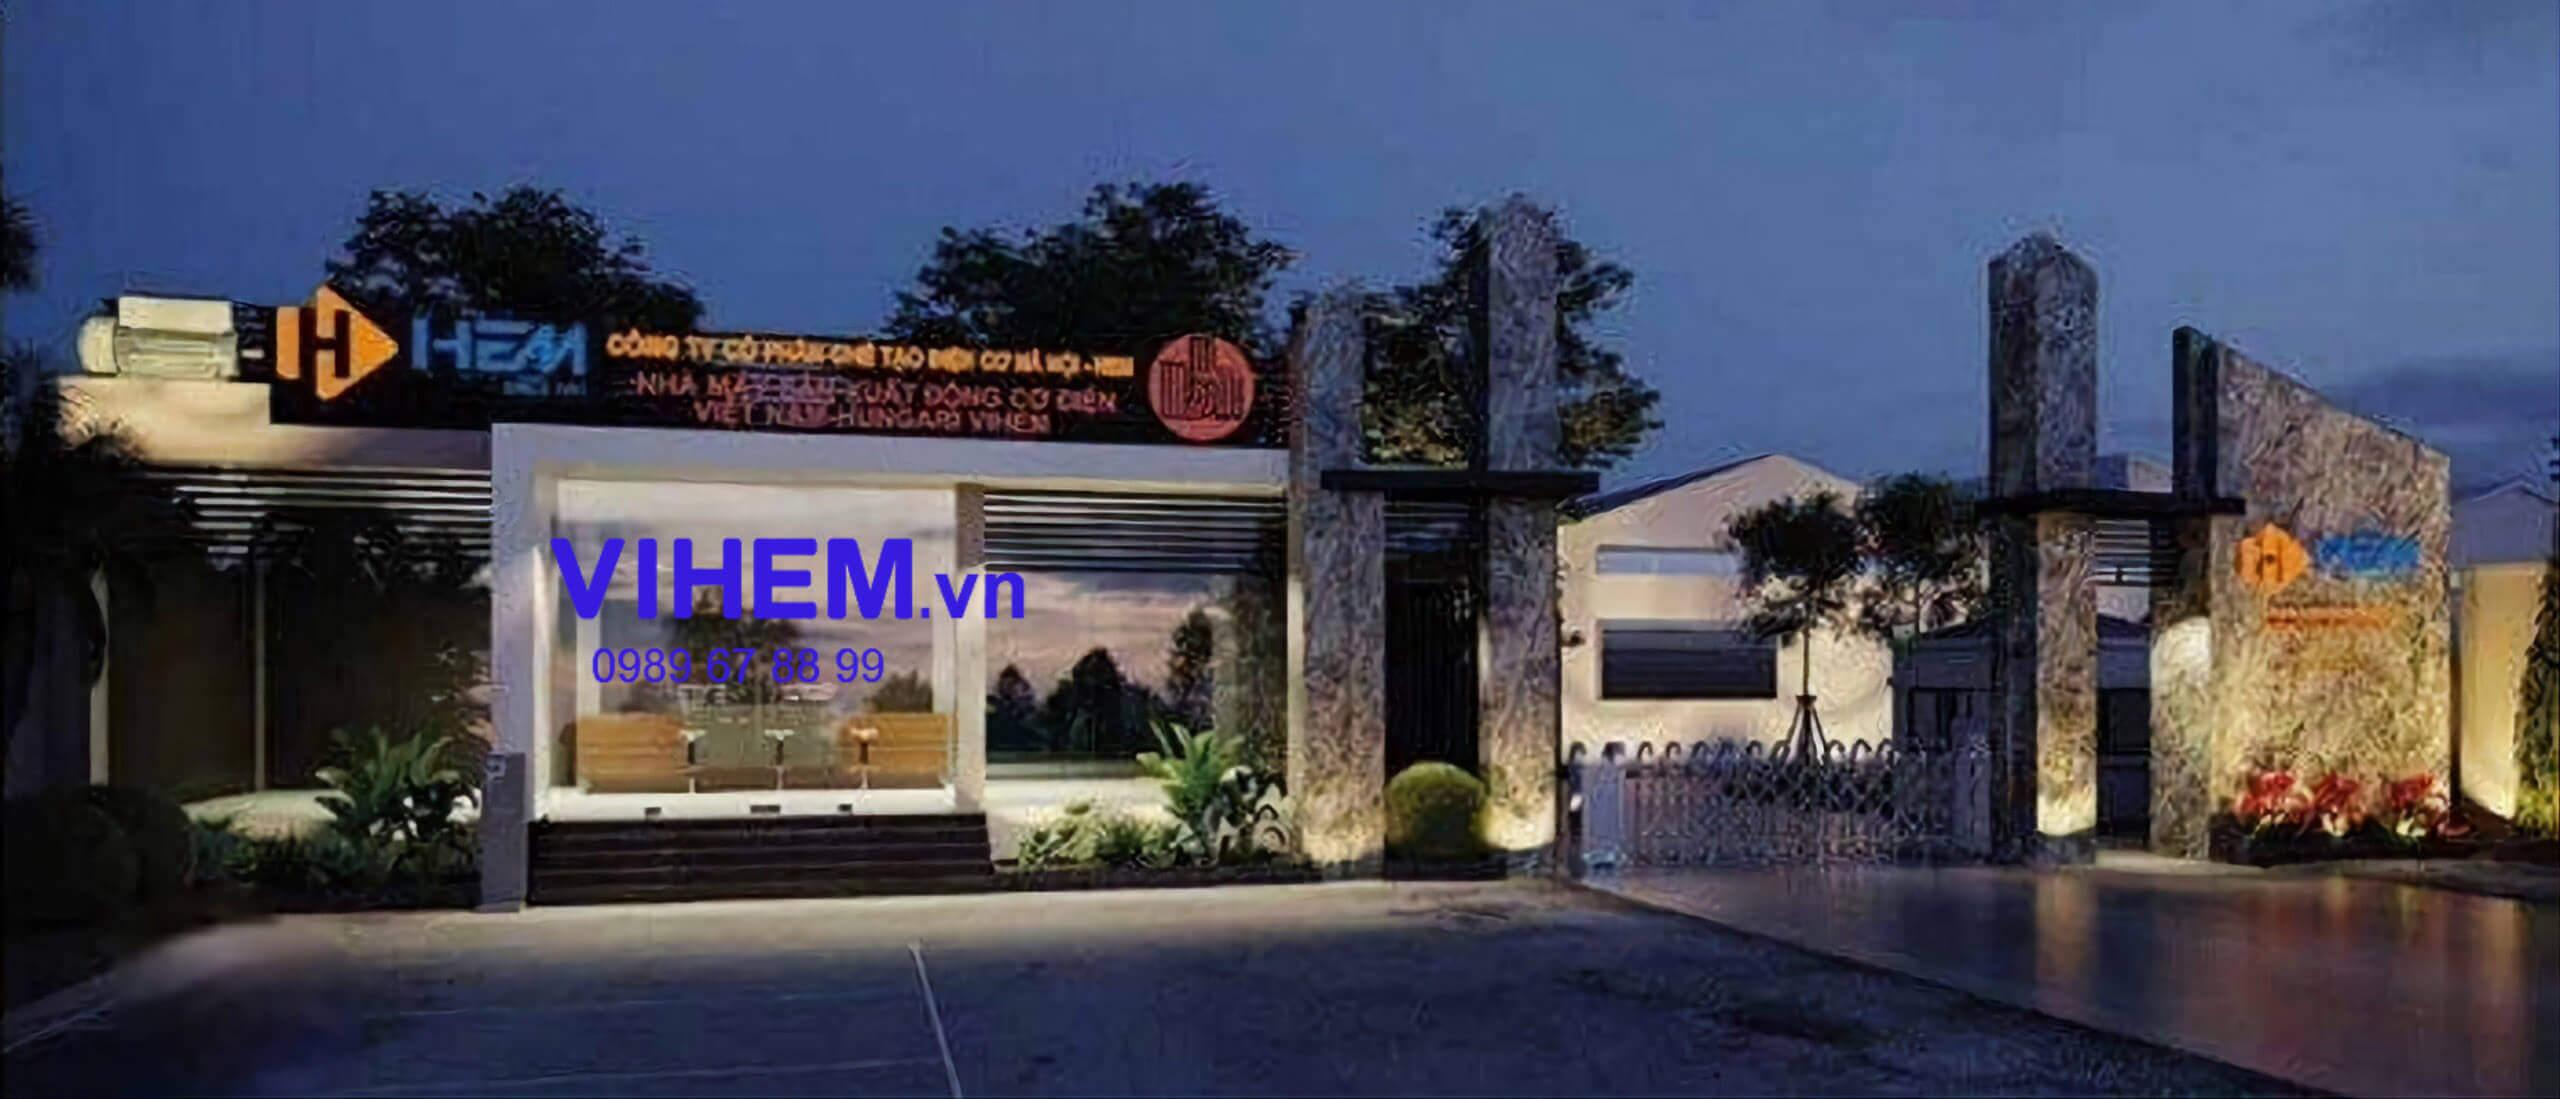 Nhà máy sản xuất HEM - VIHEM